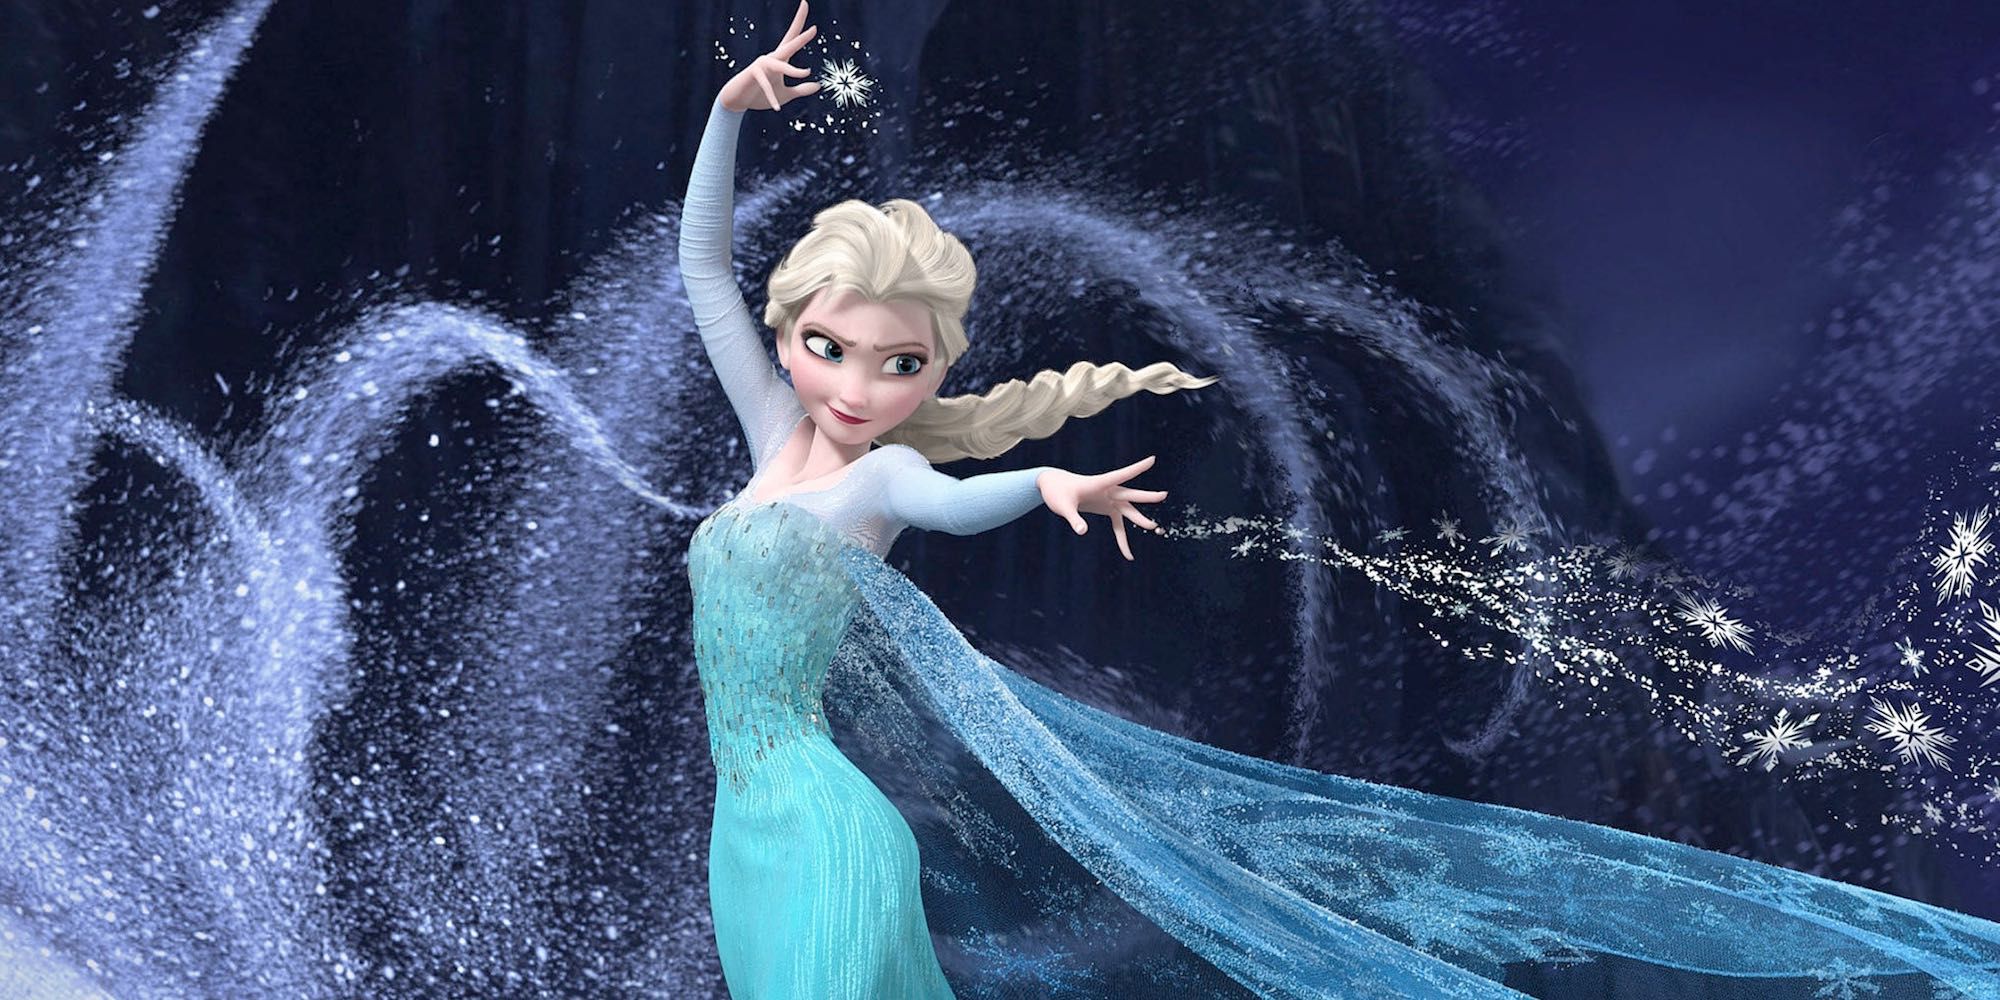 Elsa uses her snow powers in frozen